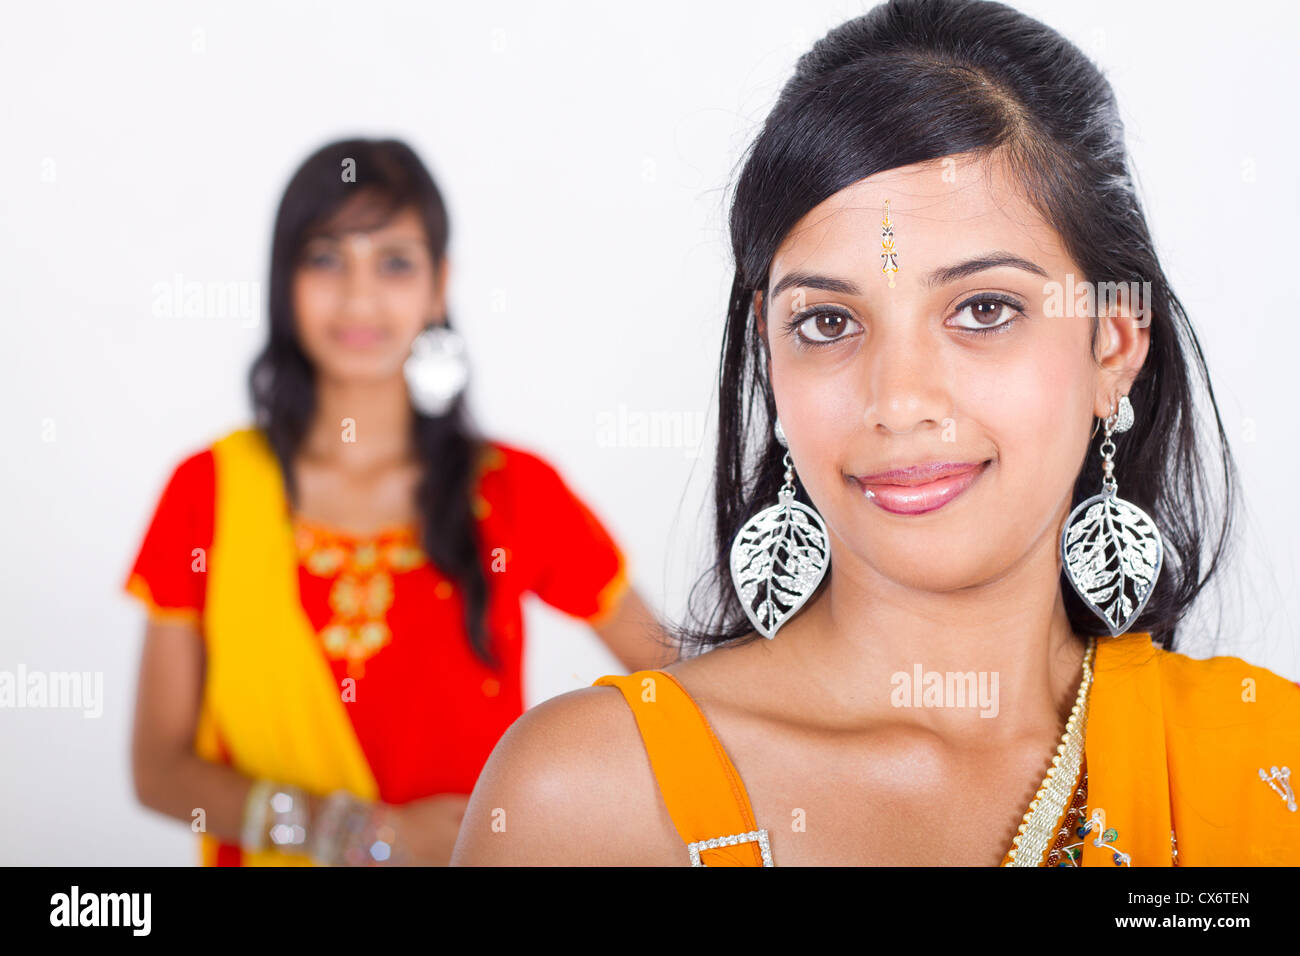 https://c8.alamy.com/comp/CX6TEN/two-indian-young-woman-closeup-CX6TEN.jpg